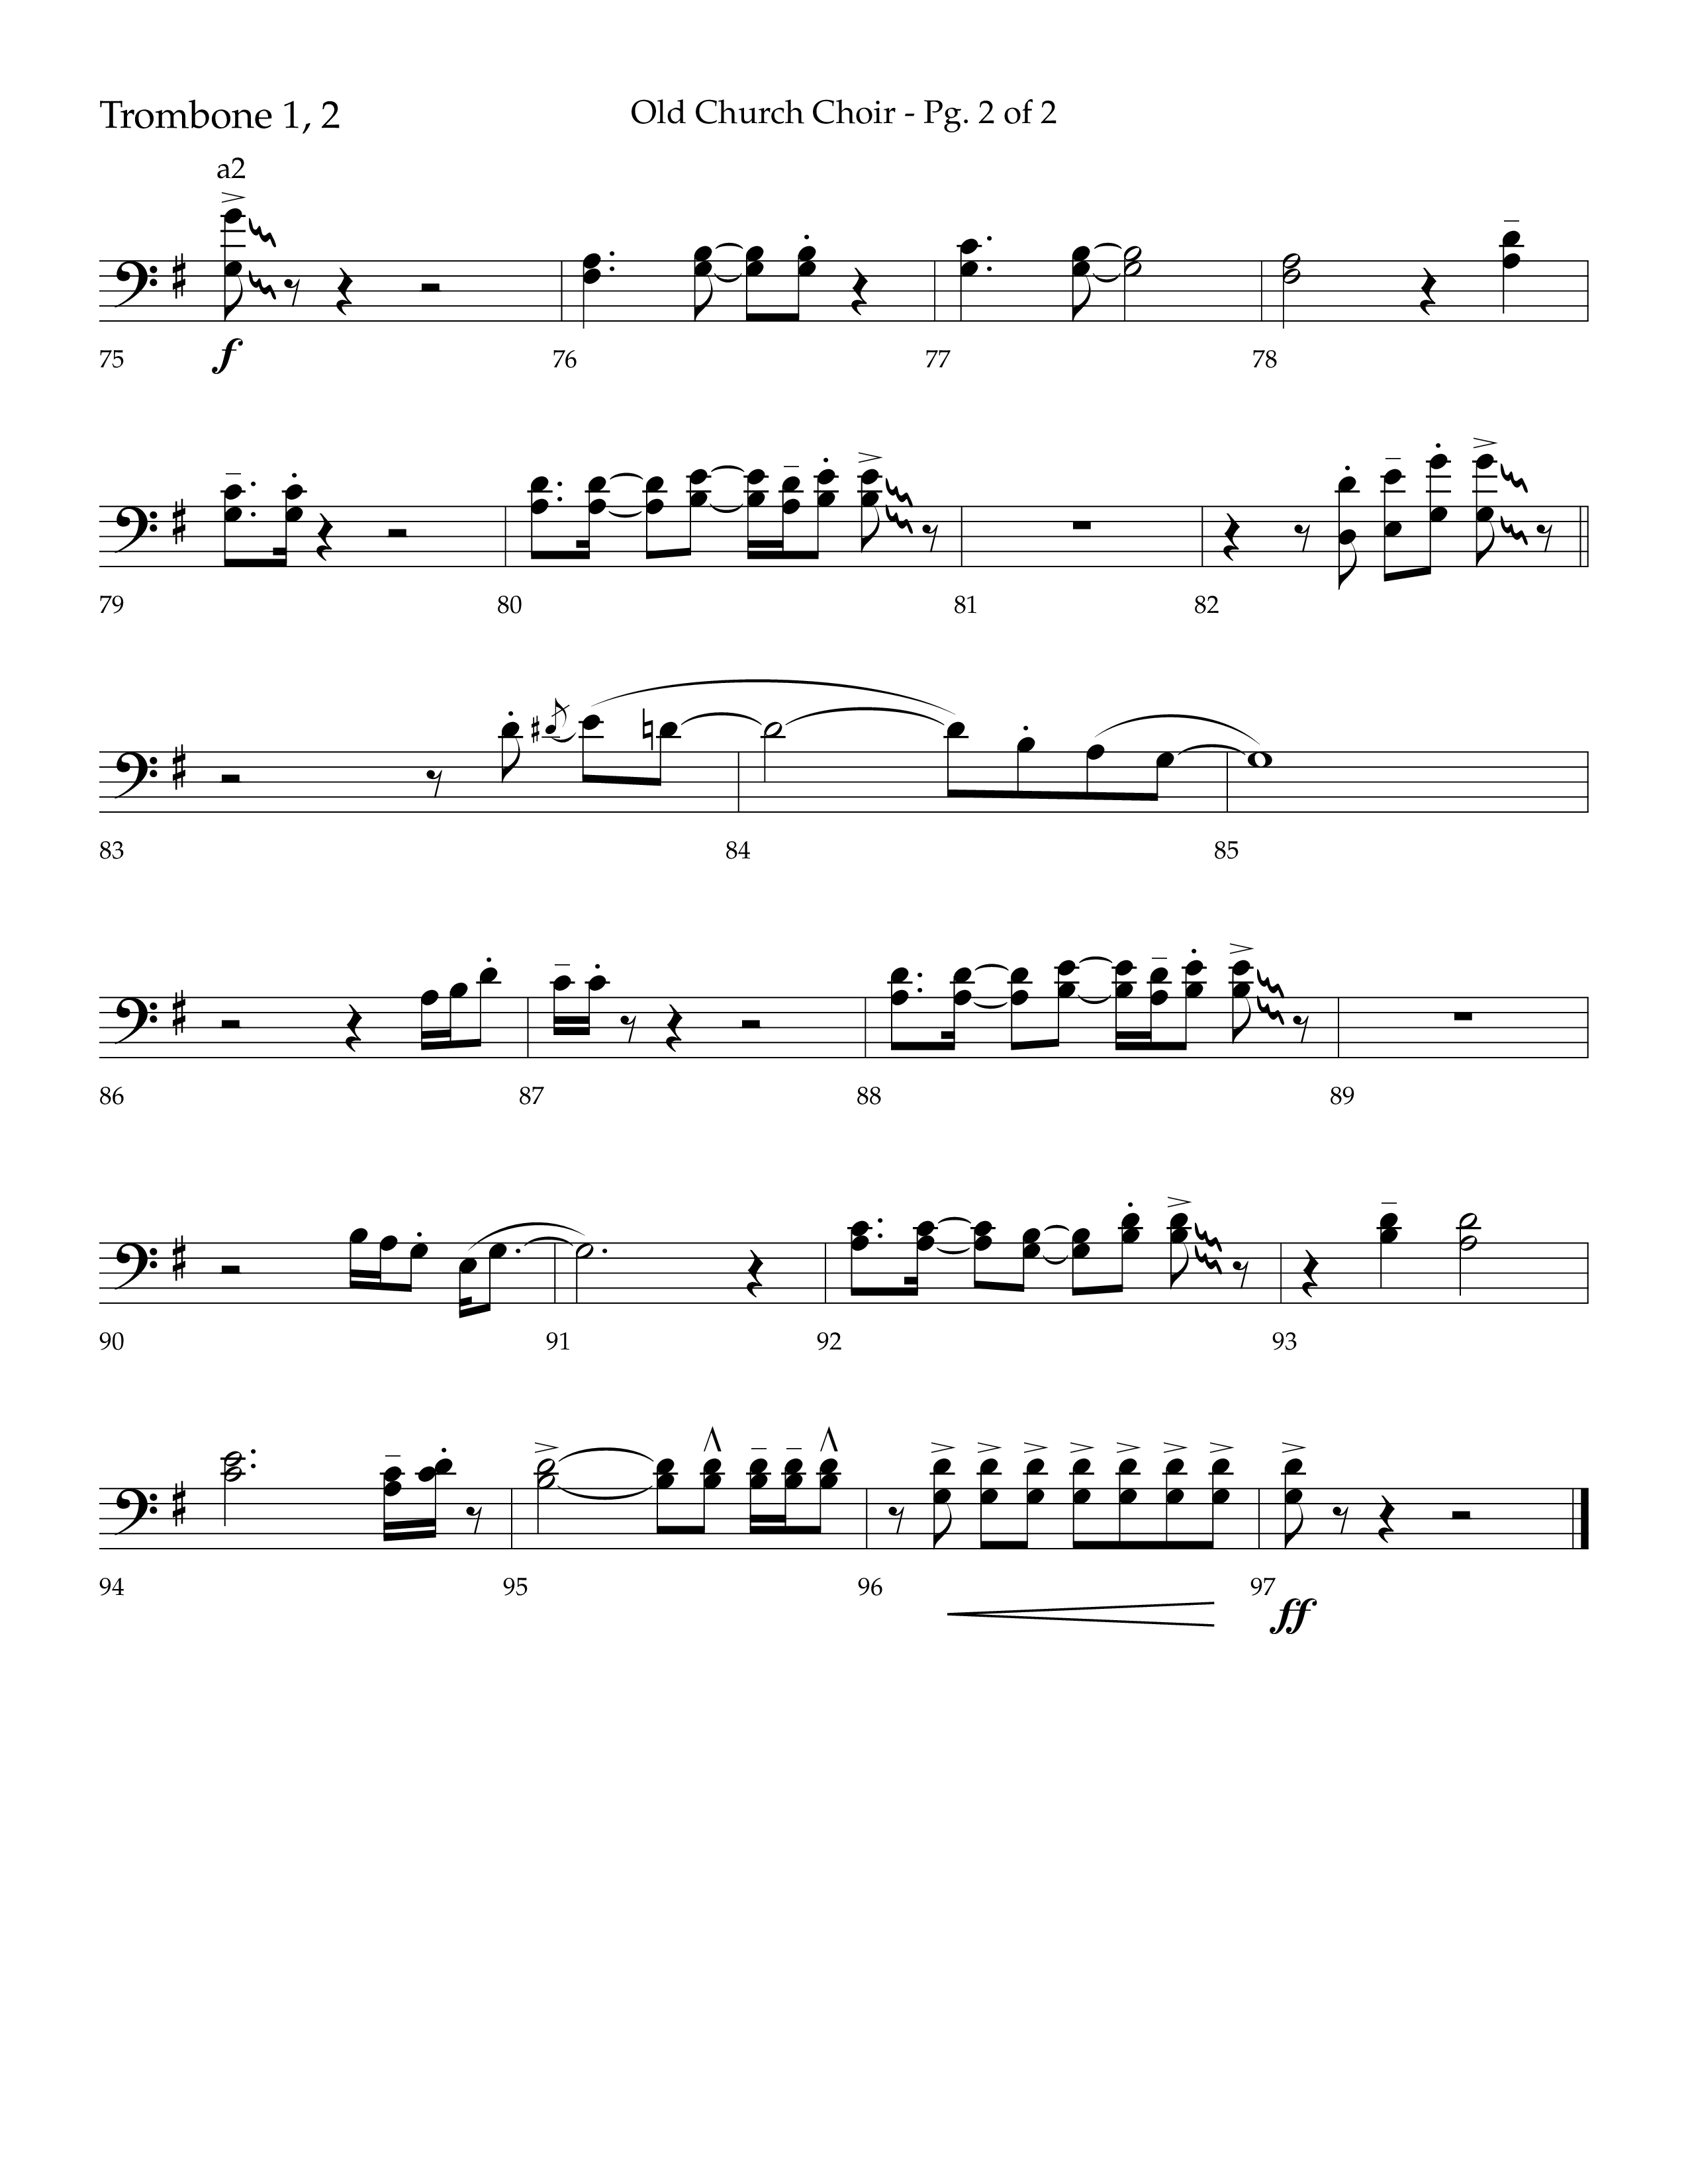 Old Church Choir (Choral Anthem SATB) Trombone 1/2 (Lifeway Choral / Arr. Ken Barker / Arr. Craig Adams / Arr. Danny Zaloudik)